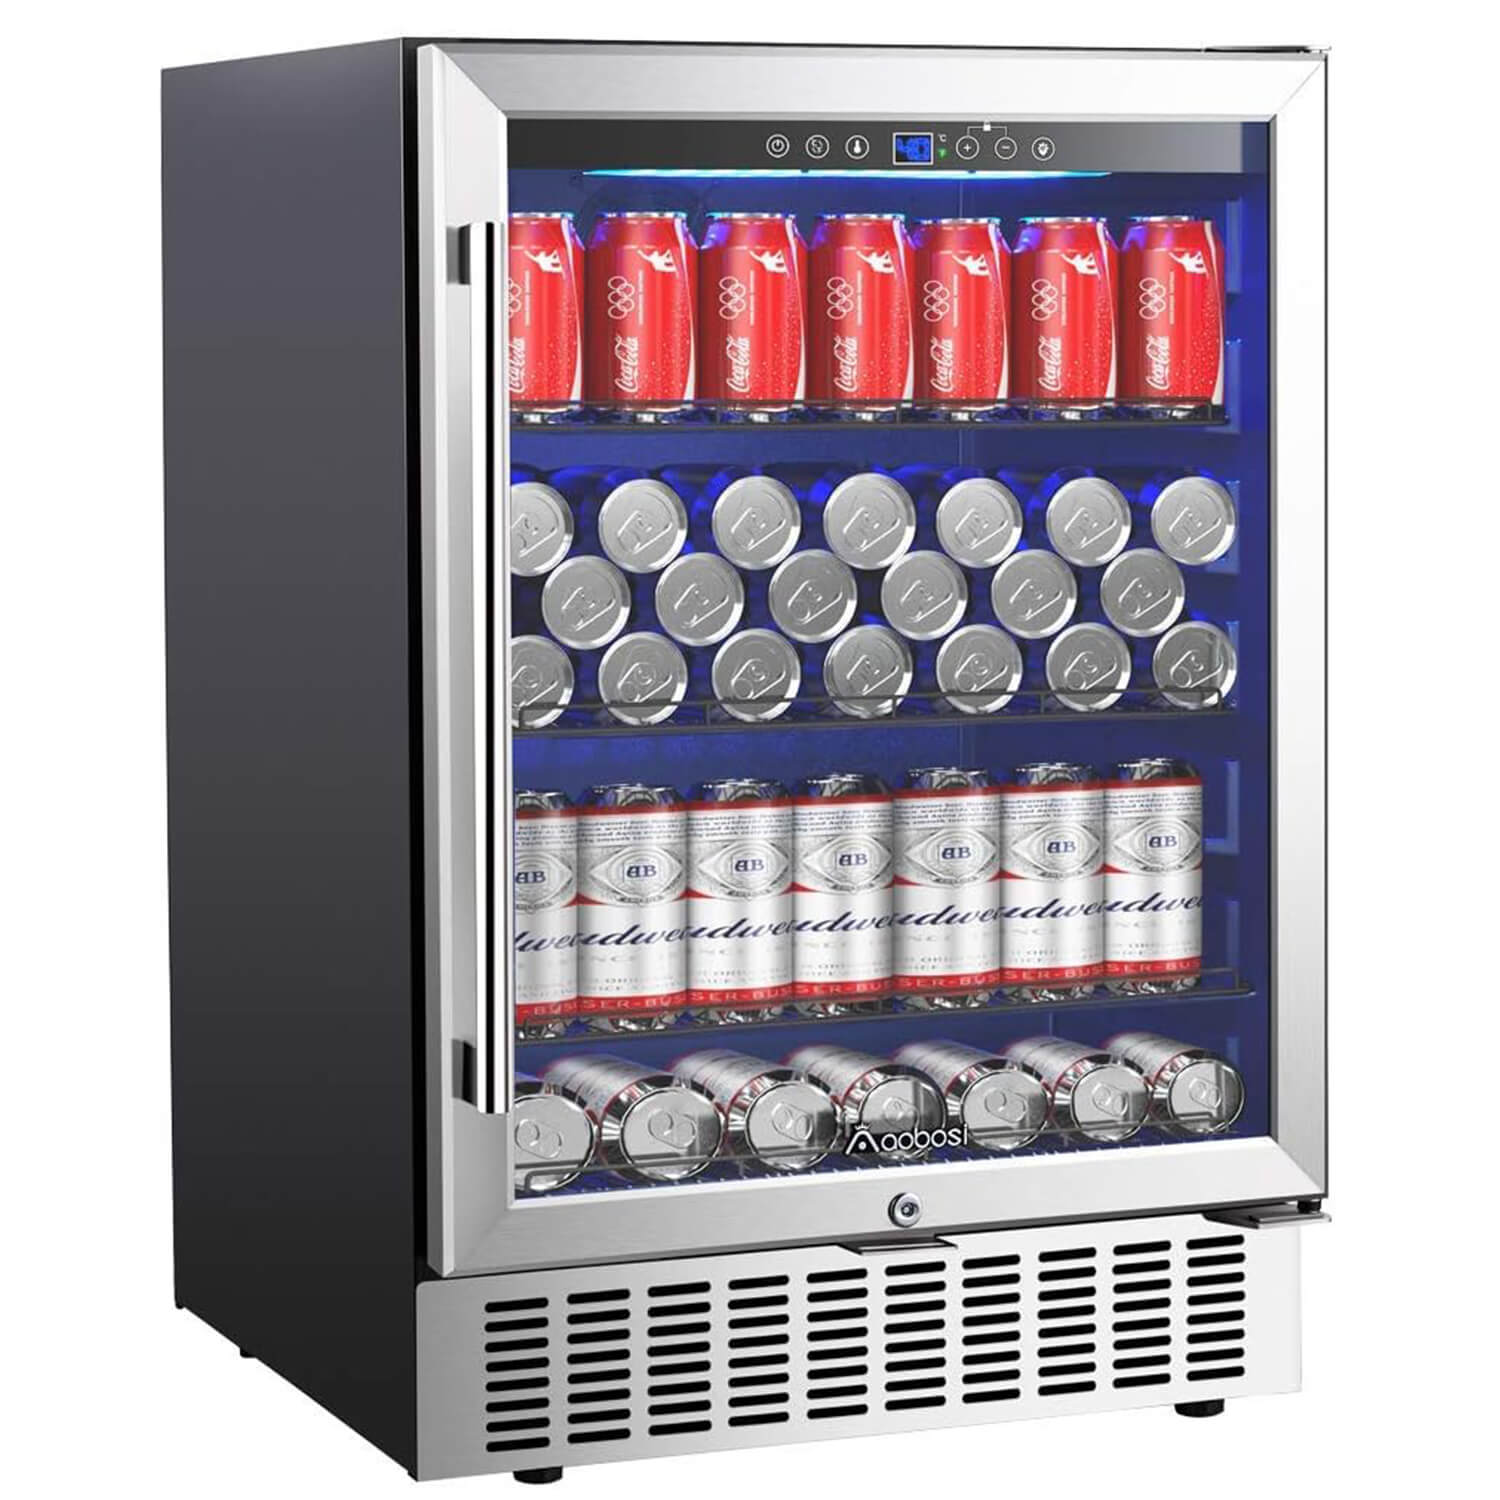 Aaobosi 25 in. 2.4 cu. ft. Mini Refrigerator in Black with Wi-Fi